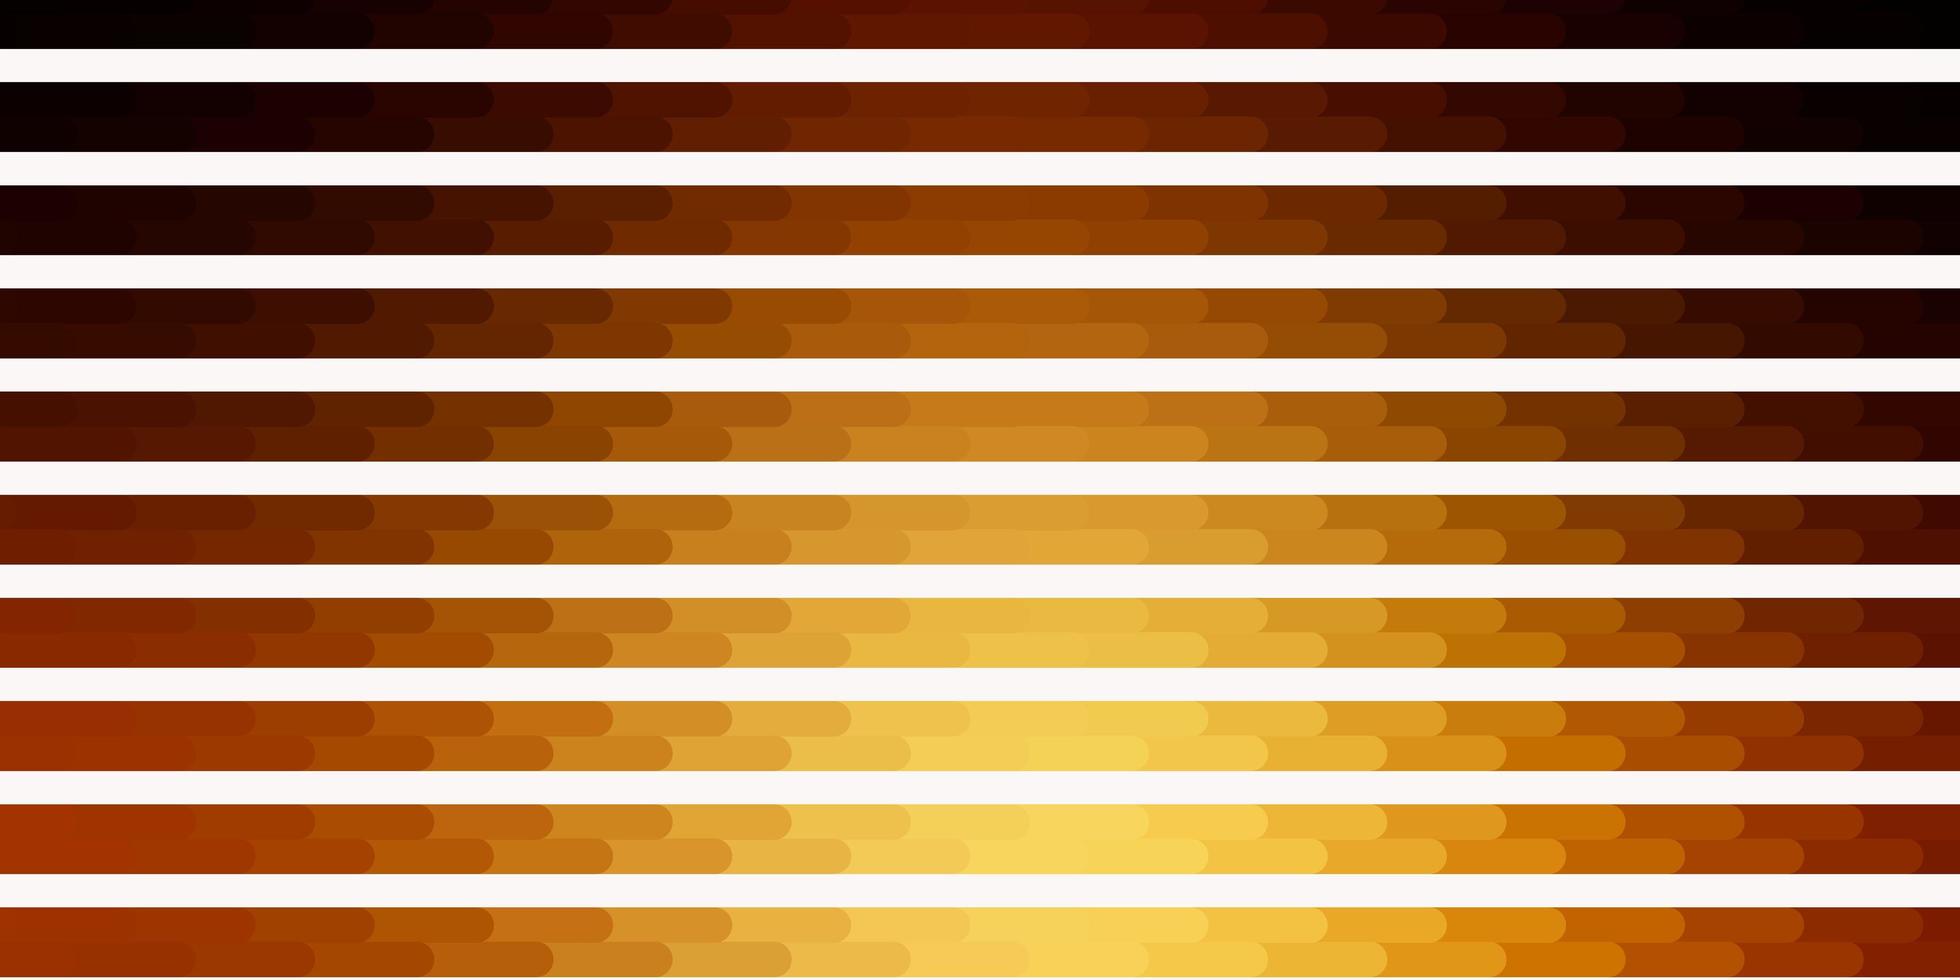 mörk gul vektor bakgrund med linjer.